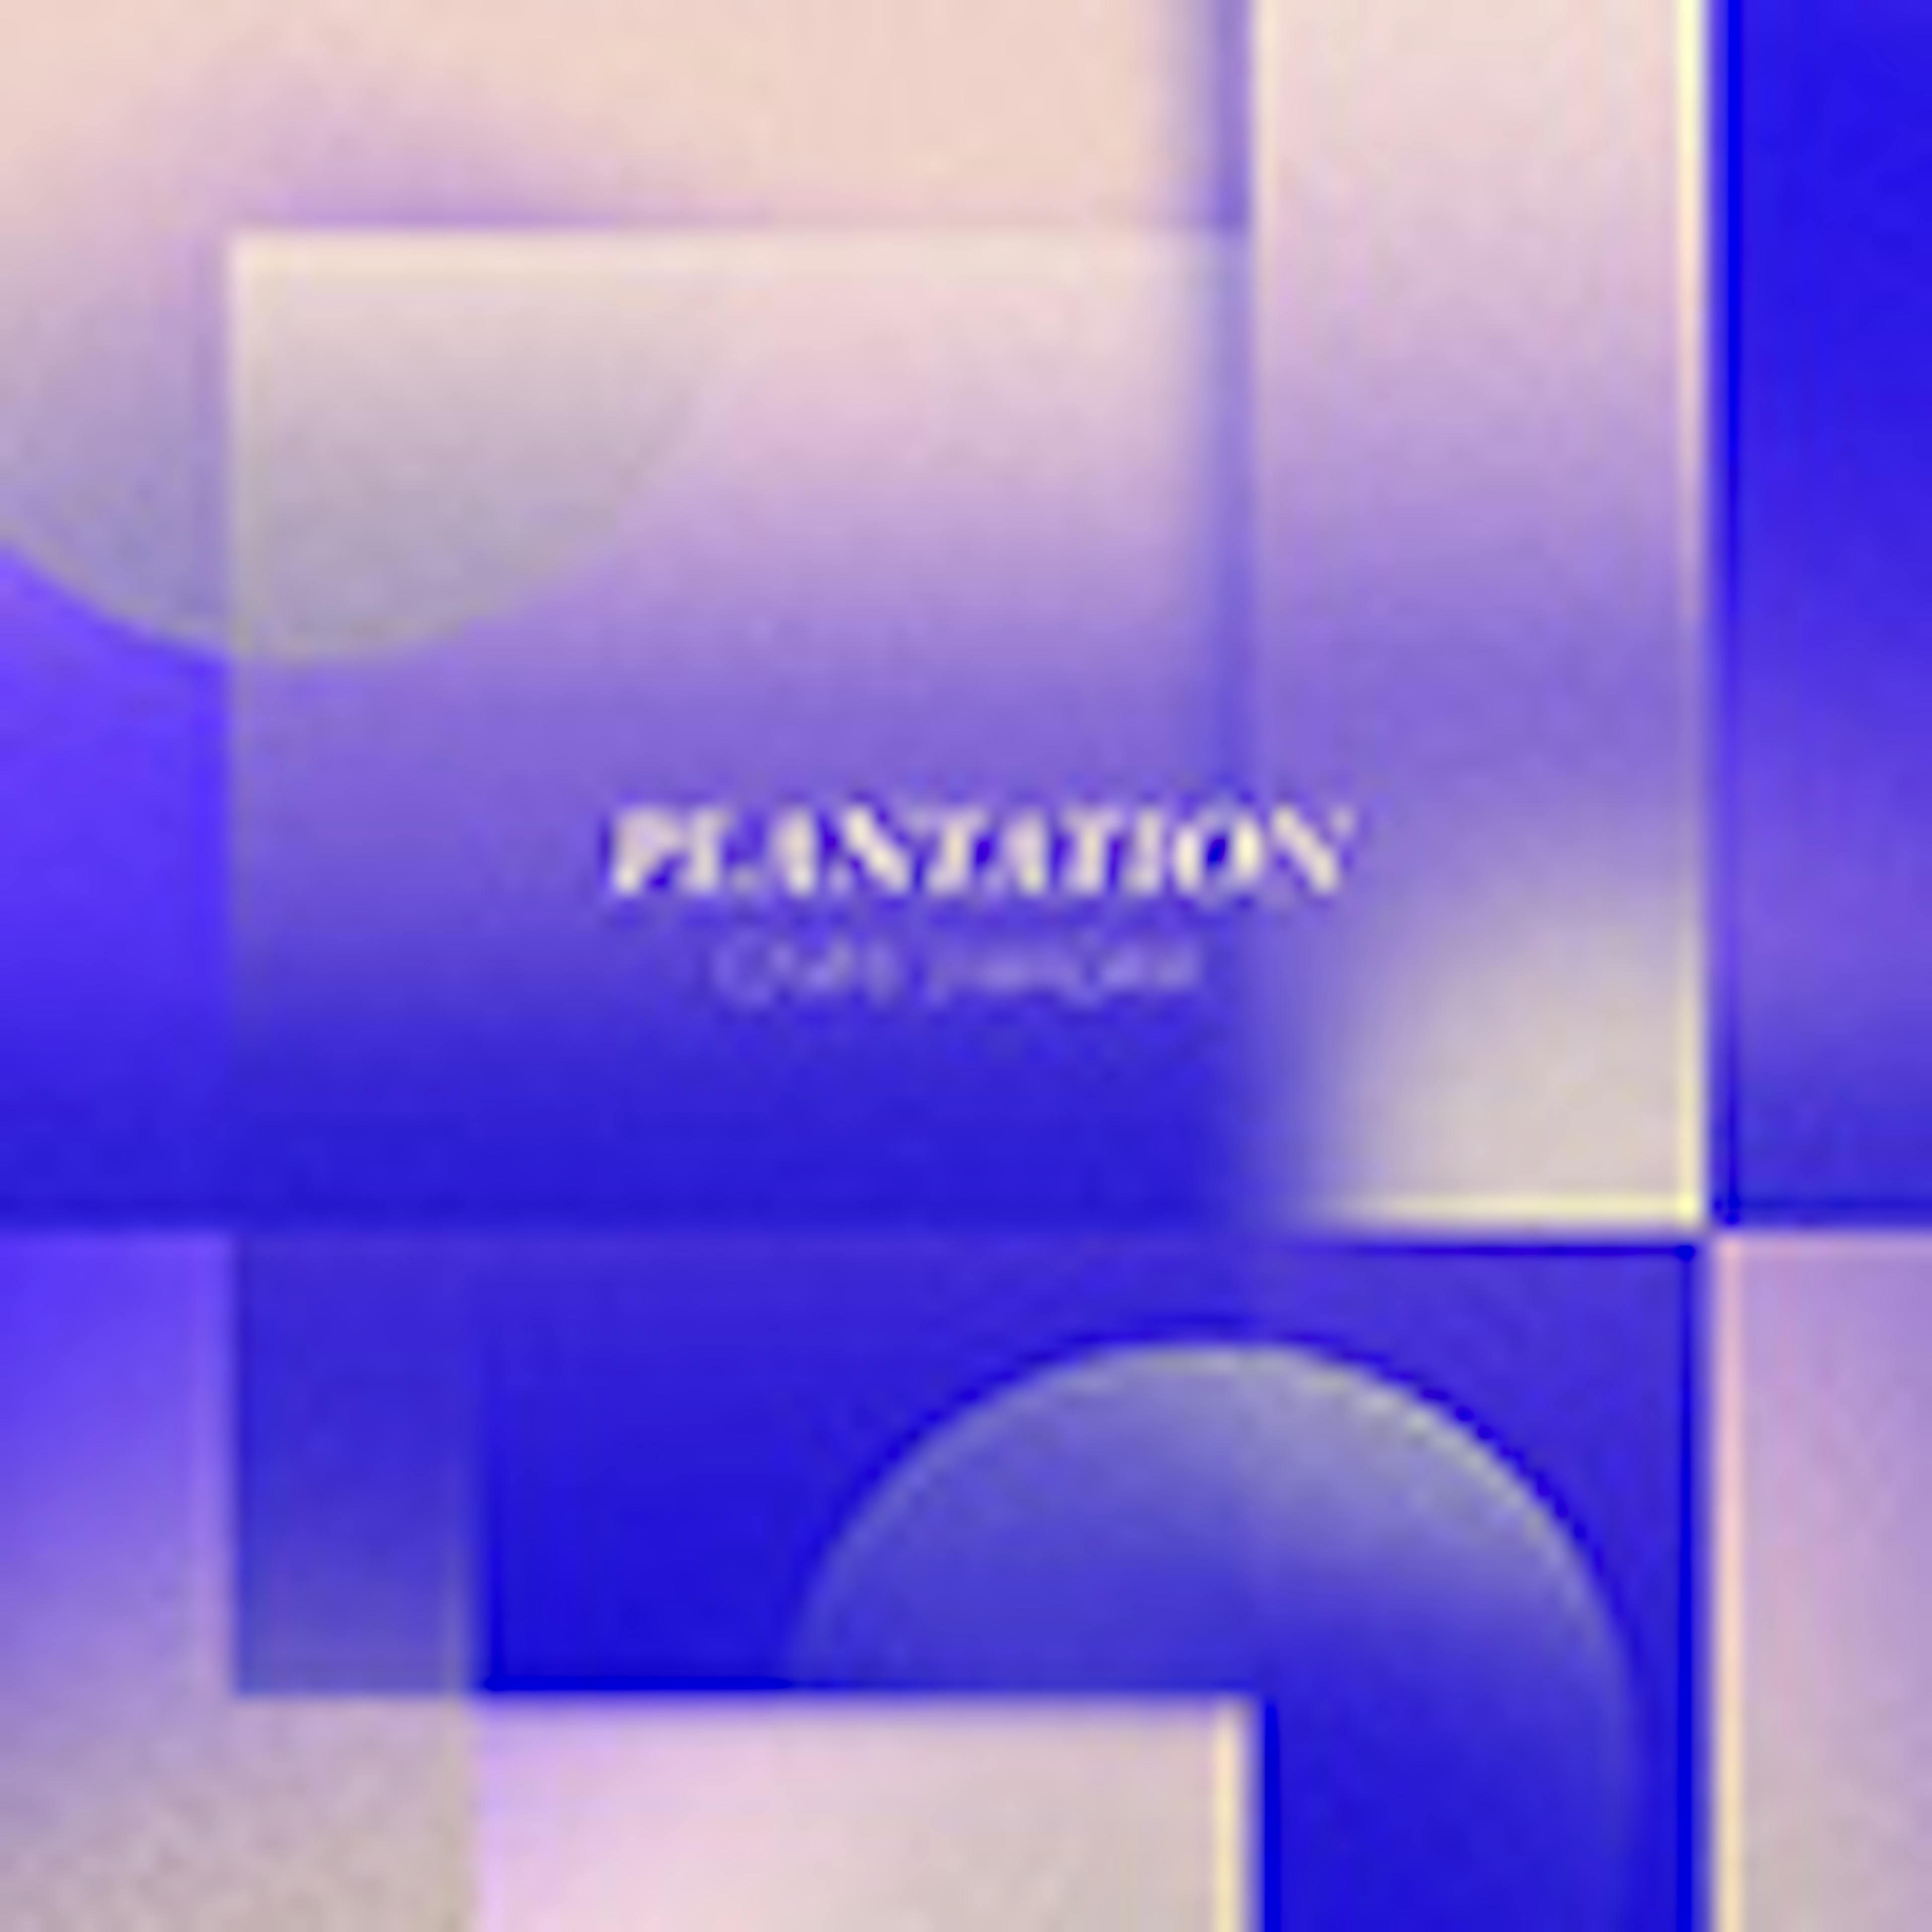 Plantation album cover